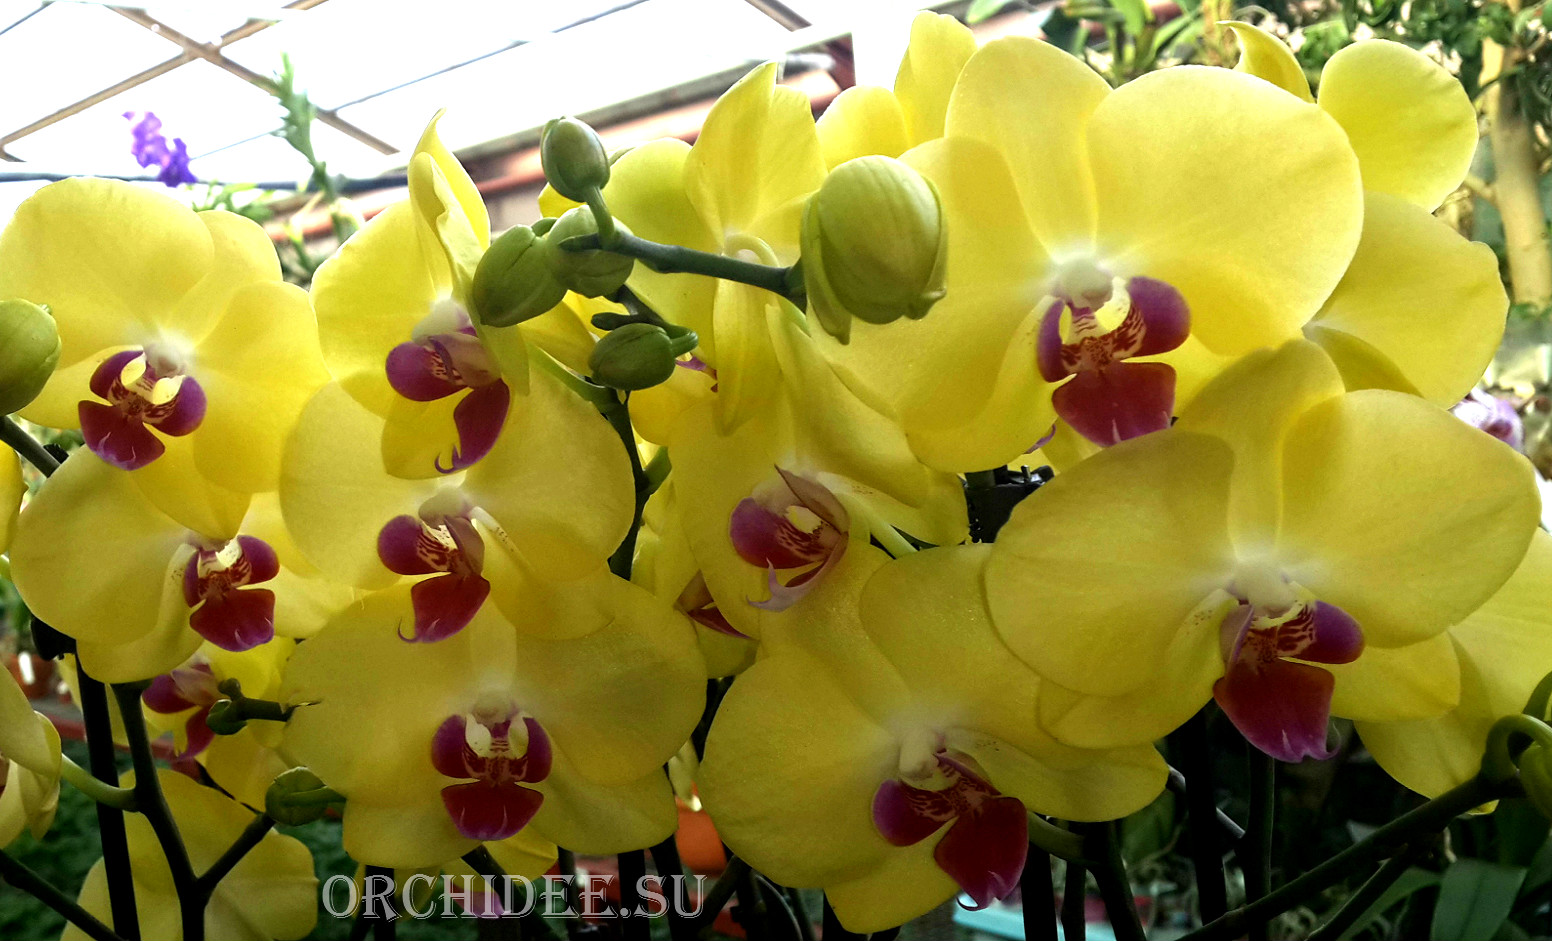 Phalaenopsis PY 004 Miraflore yellow